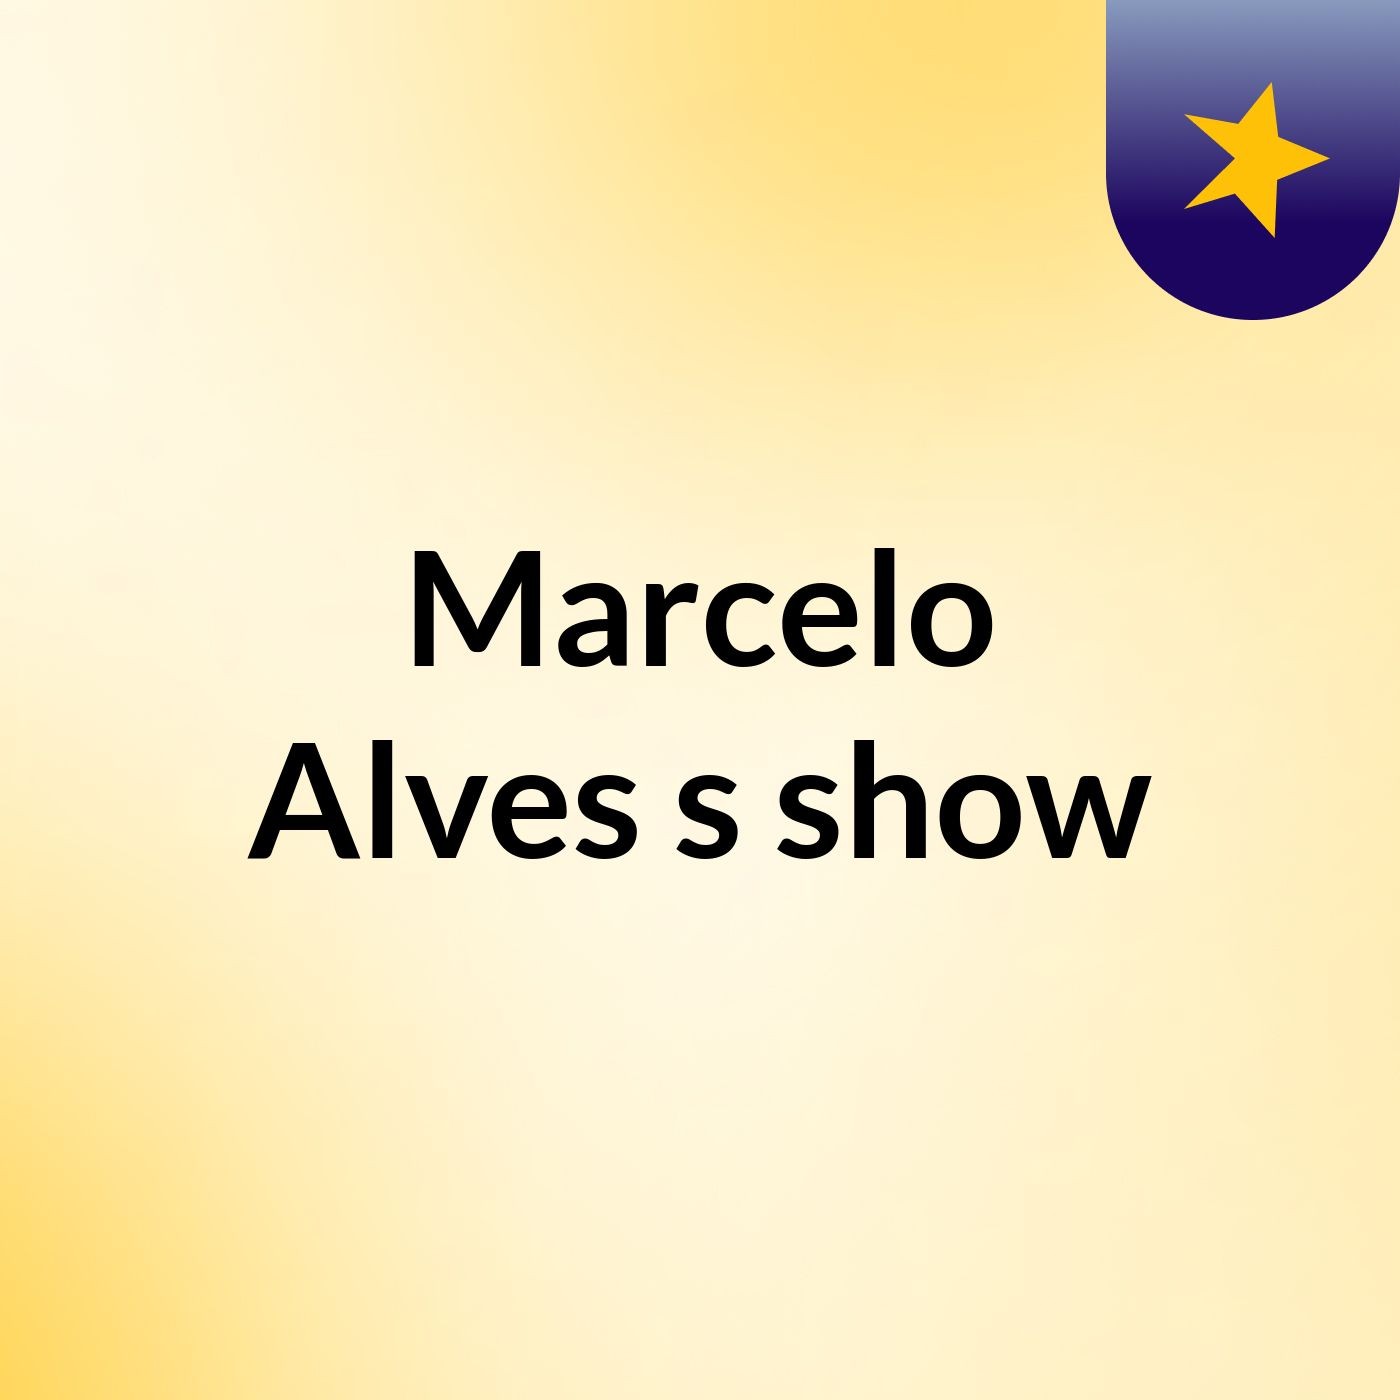 Marcelo Alves's show